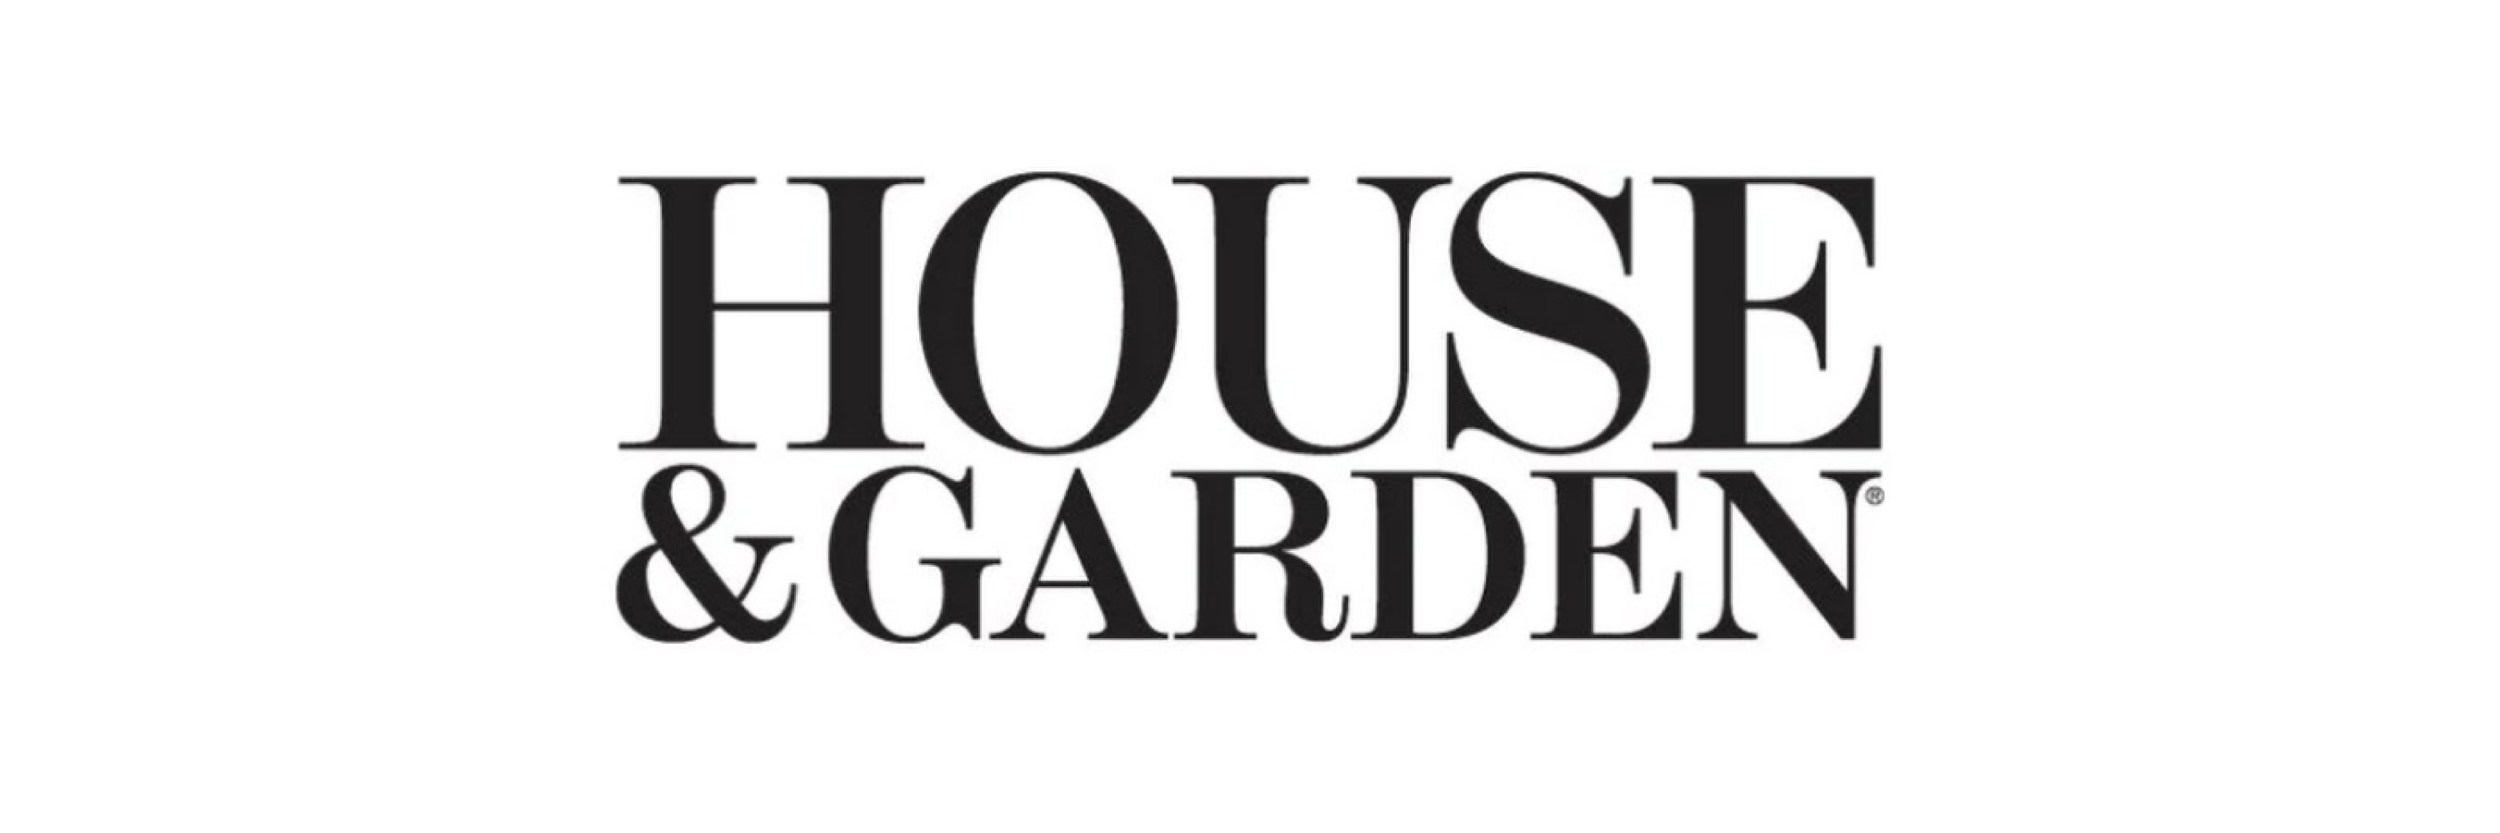 House & garden Logo_medium.png